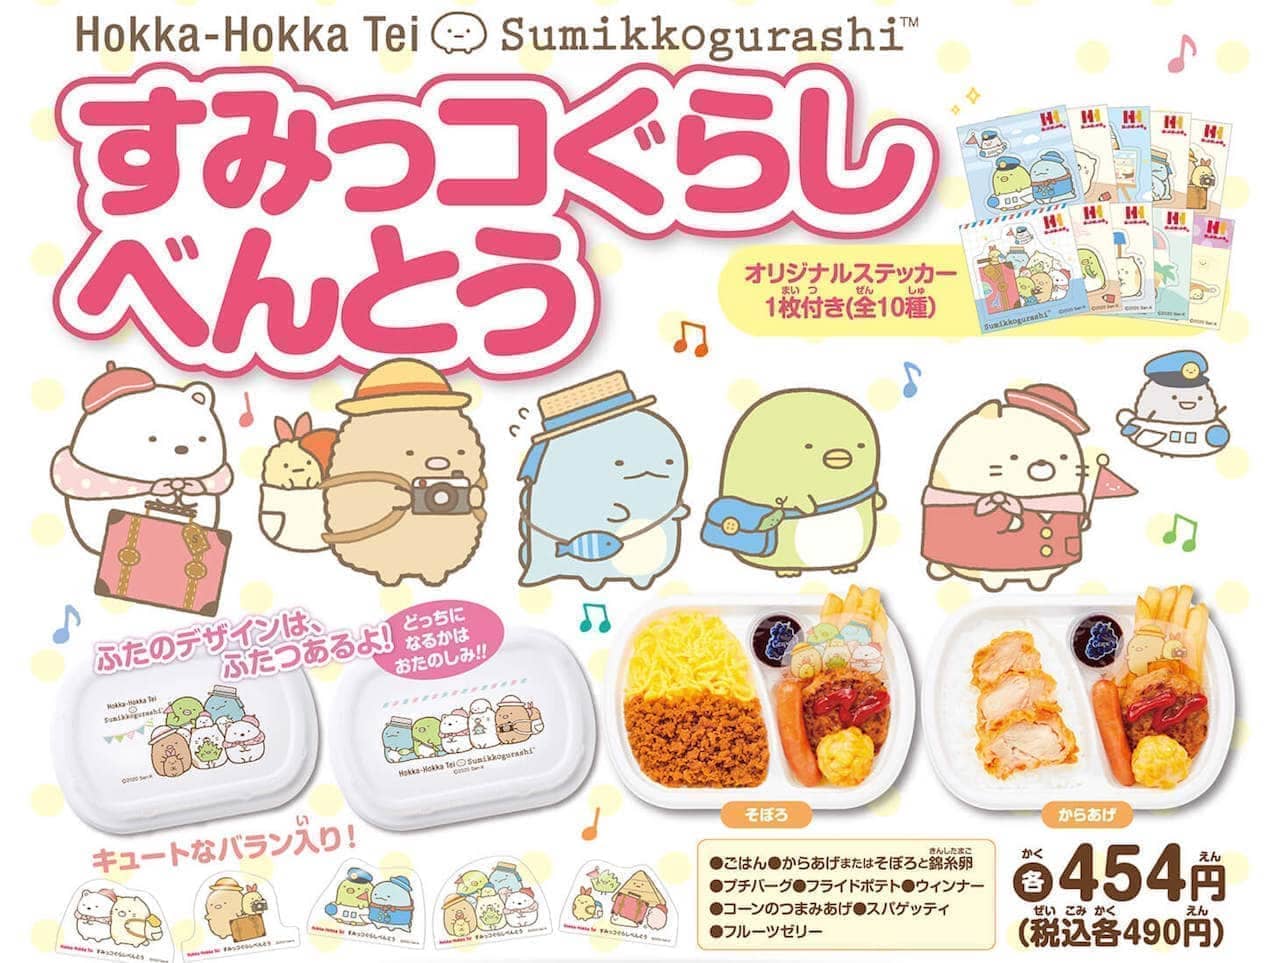 Hokka Hokka Tei's Hokka Point App Members Only "Sumikko Gurashi Premium Campaign"